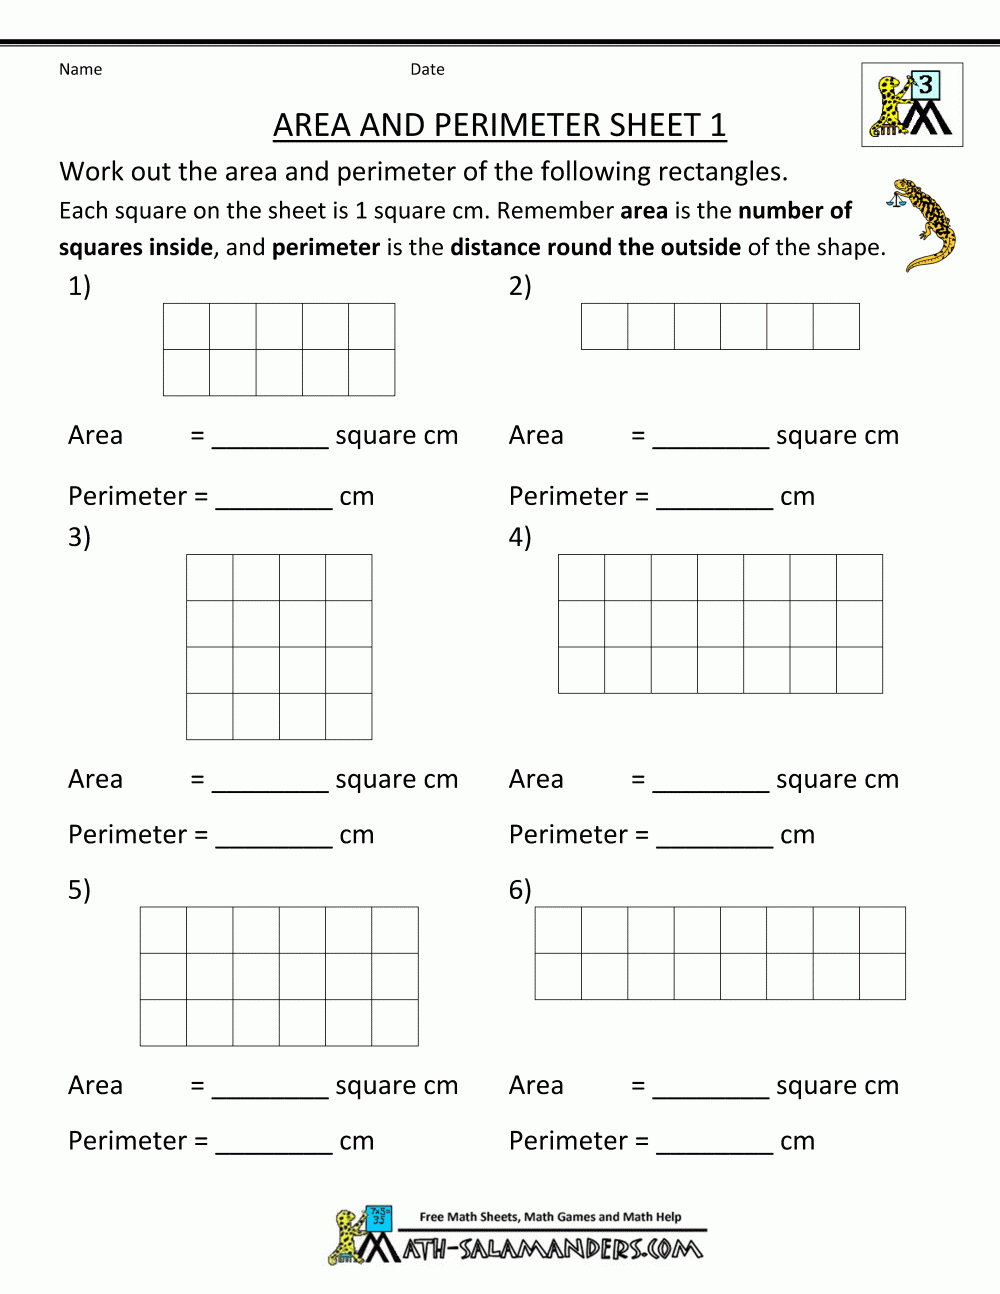 Perimeter Worksheets - Free Printable Perimeter Worksheets 3Rd Grade